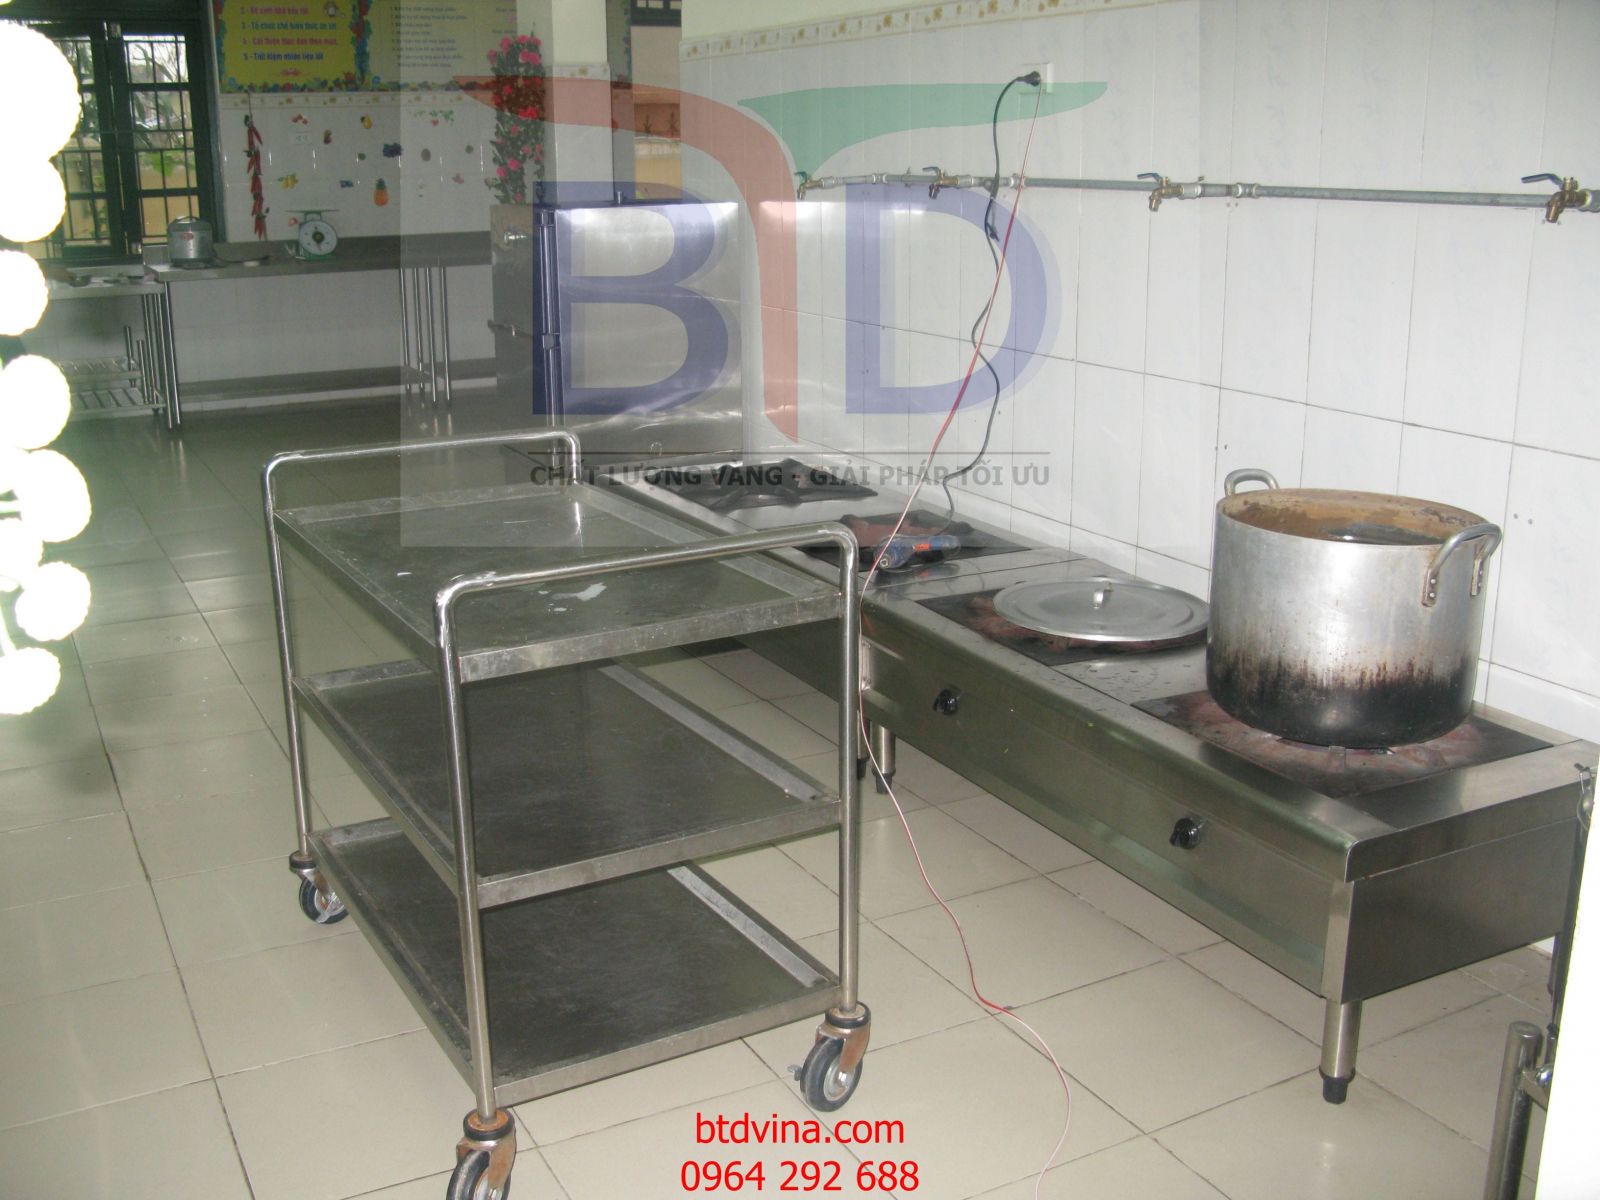 Bếp hầm inox tại khu bếp trường mầm non Văn Khê- Hà Đông- Hà Nội